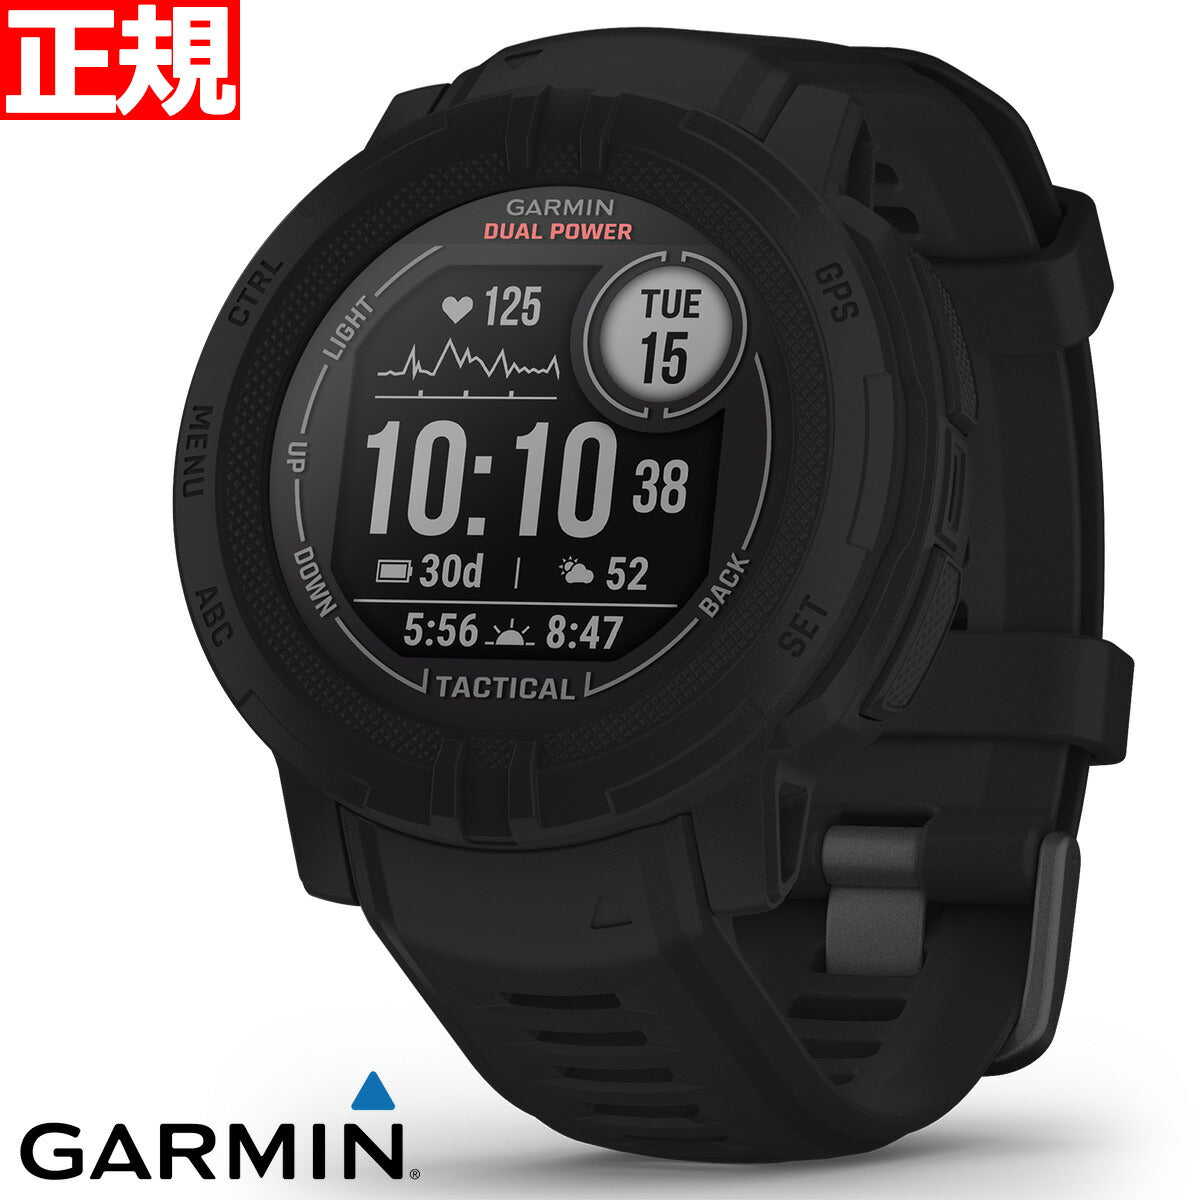 ガーミン GARMIN Instinct 2 Dual Power インスティンクト2 デュアルパワー タクティカルエディション Tactical Edition GPS スマートウォッチ 腕時計 Black 010-02627-43